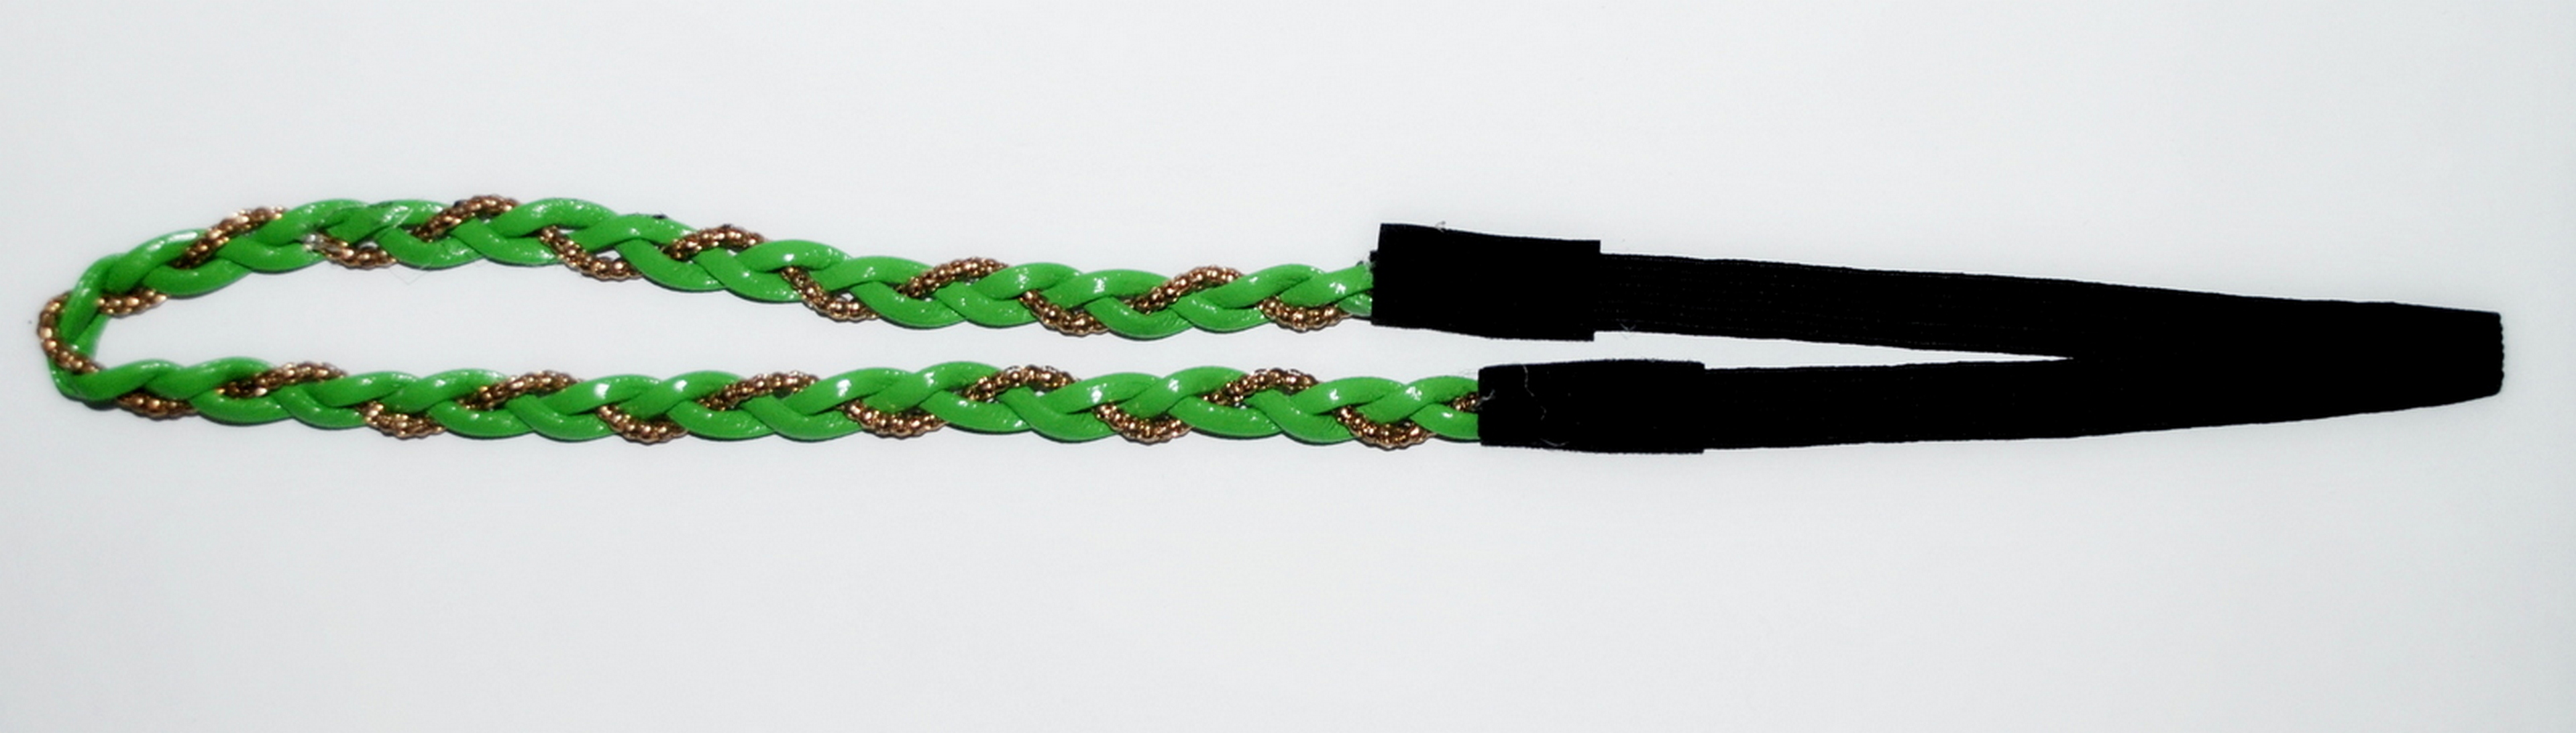 Повязка для волос Fashion Jewelry зеленая с золотой нитью повязка для волос fashion jewelry розовая с золотой нитью